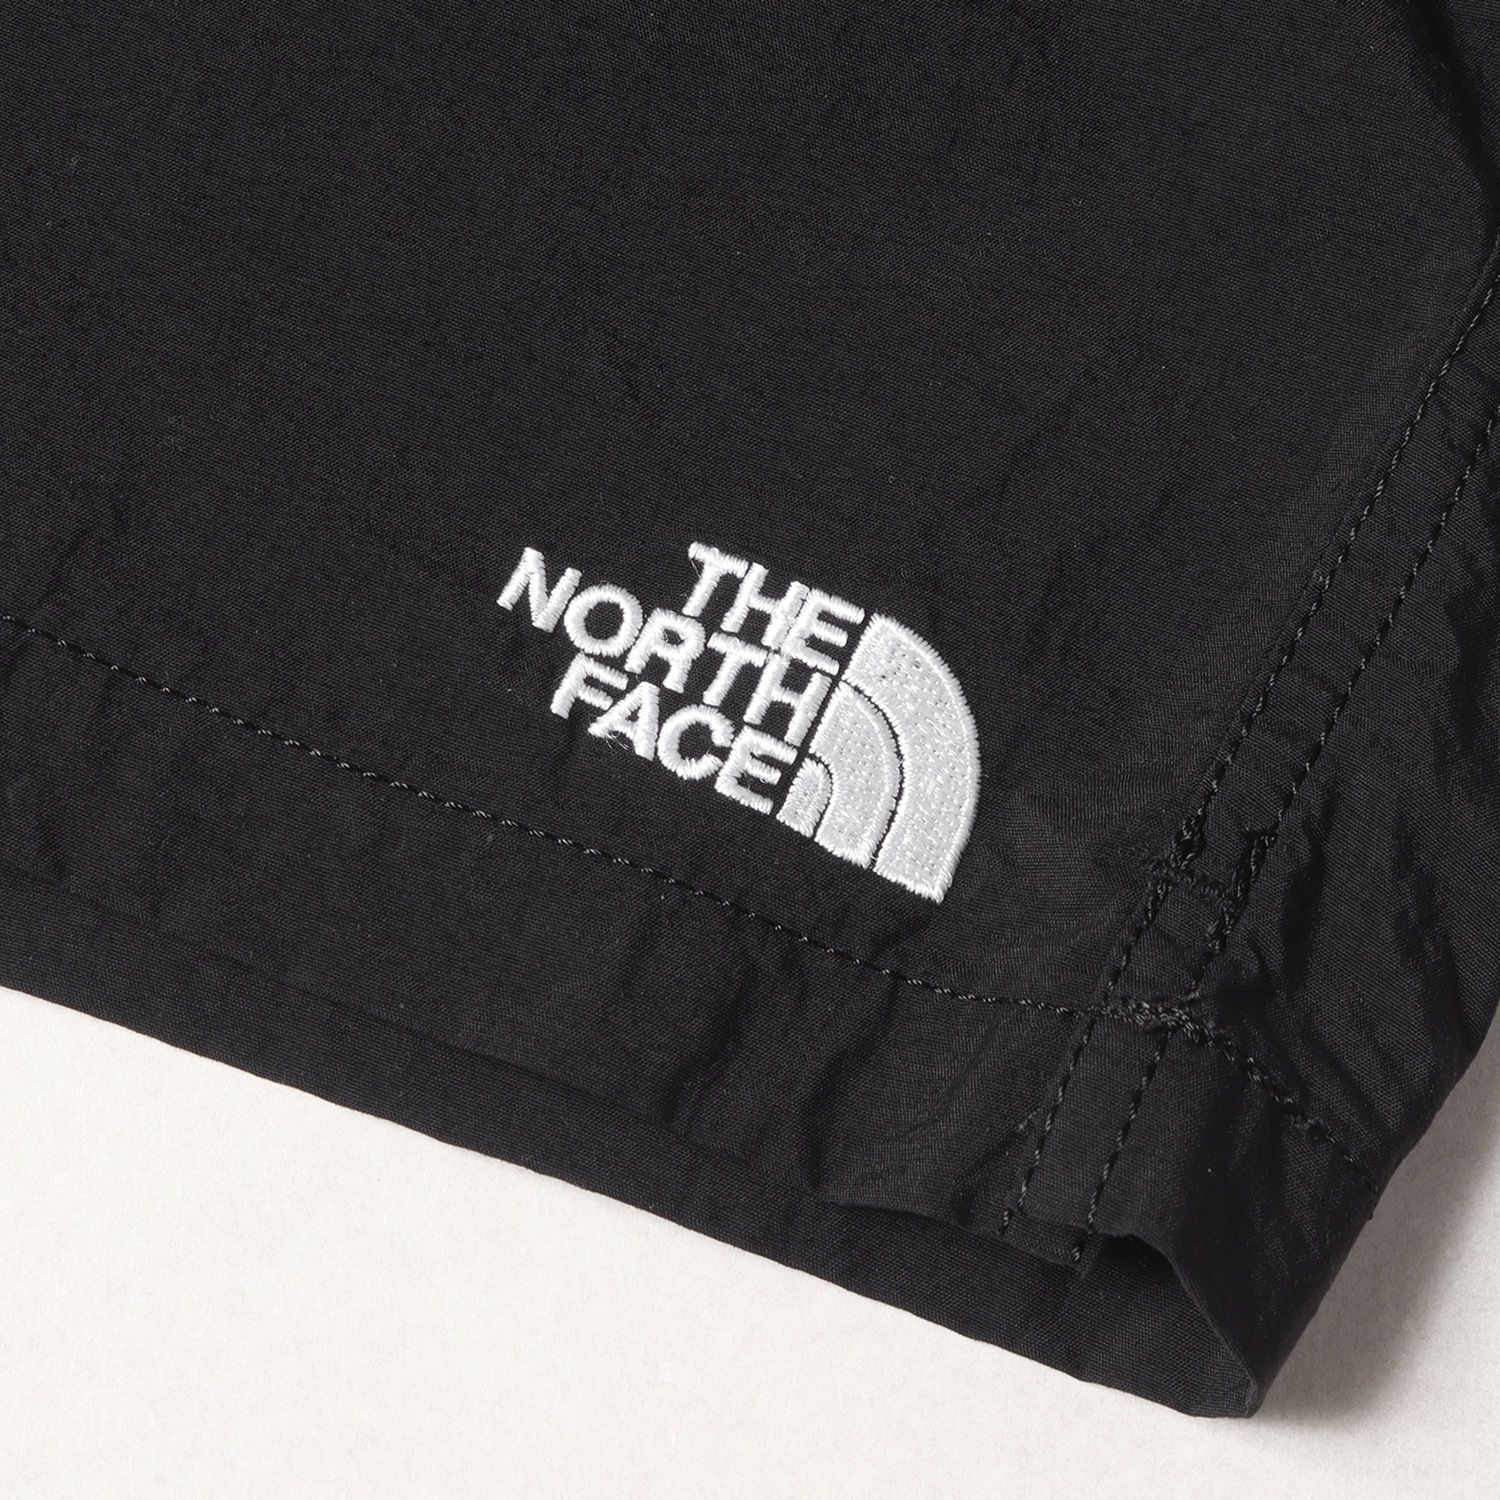 THE NORTH FACE ザ ノースフェイス パンツ サイズ:M バーサタイル ショーツ Versatile Short ブラック(K) 黒  ボトムス ズボン ショートパンツ【メンズ】